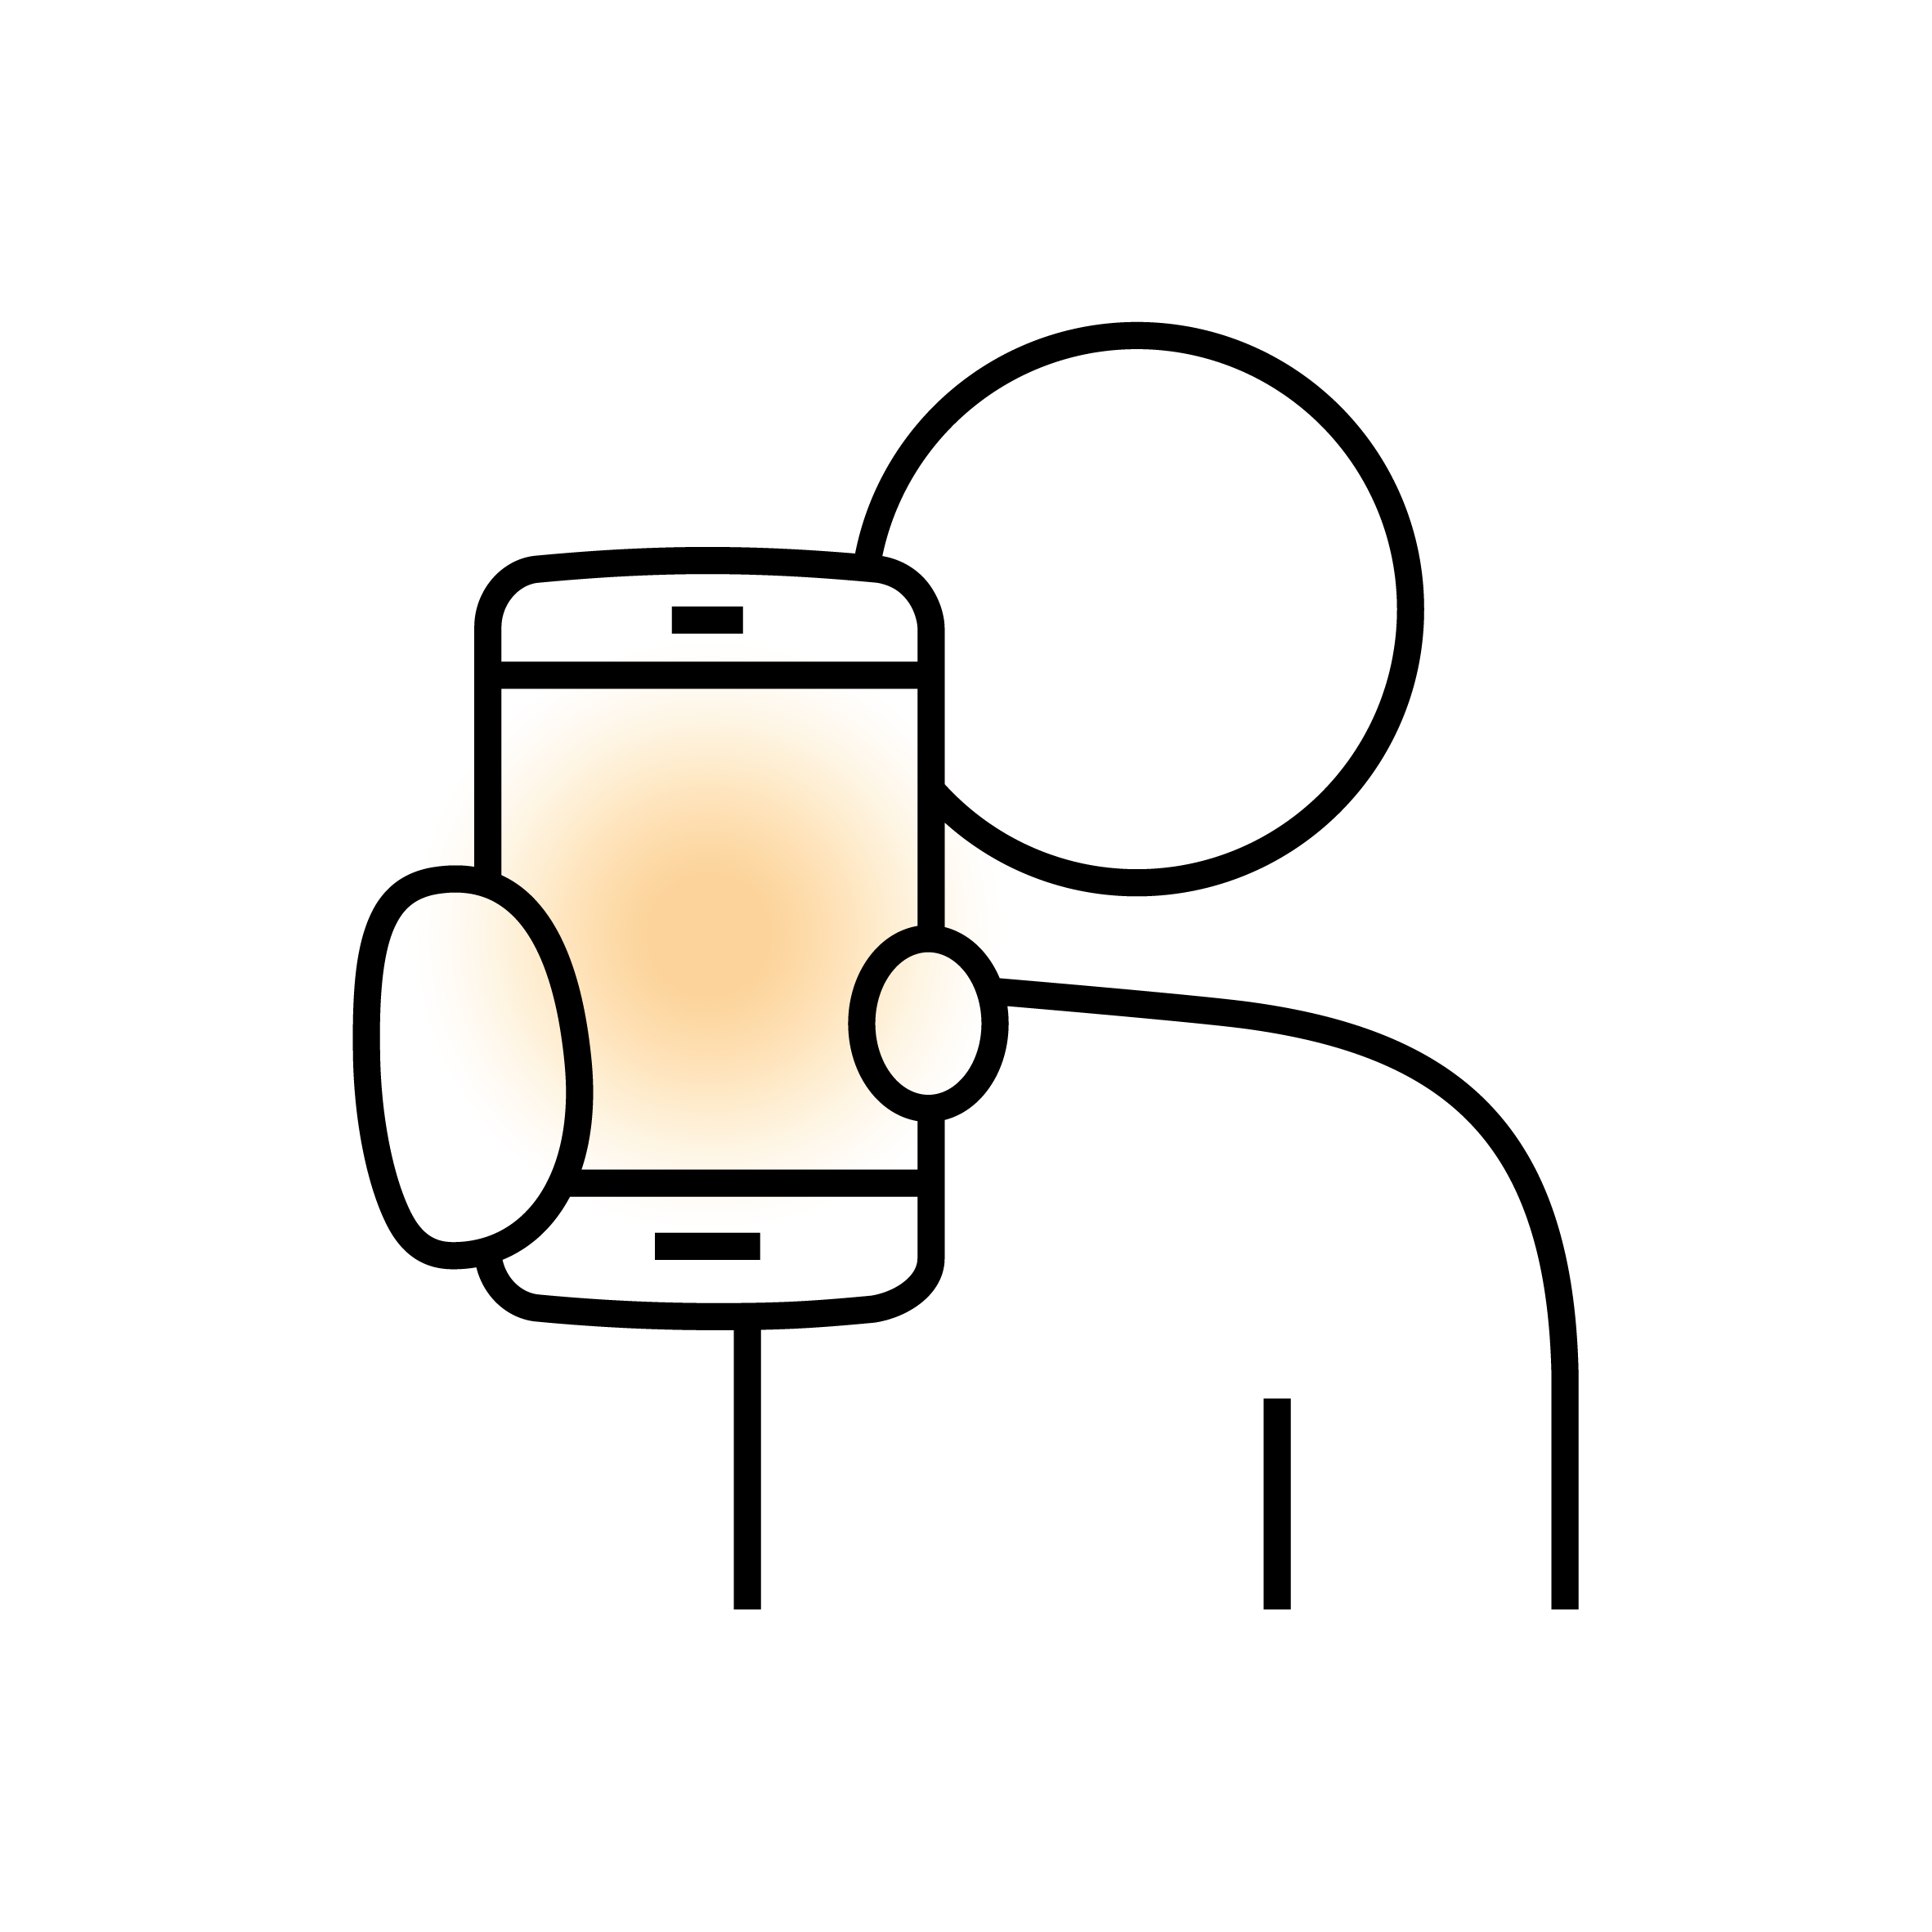 Stilisierte Grafik eines Smartphones mit Kopfhörern und Gesprächsblase, symbolisch für Kommunikation oder Podcast.